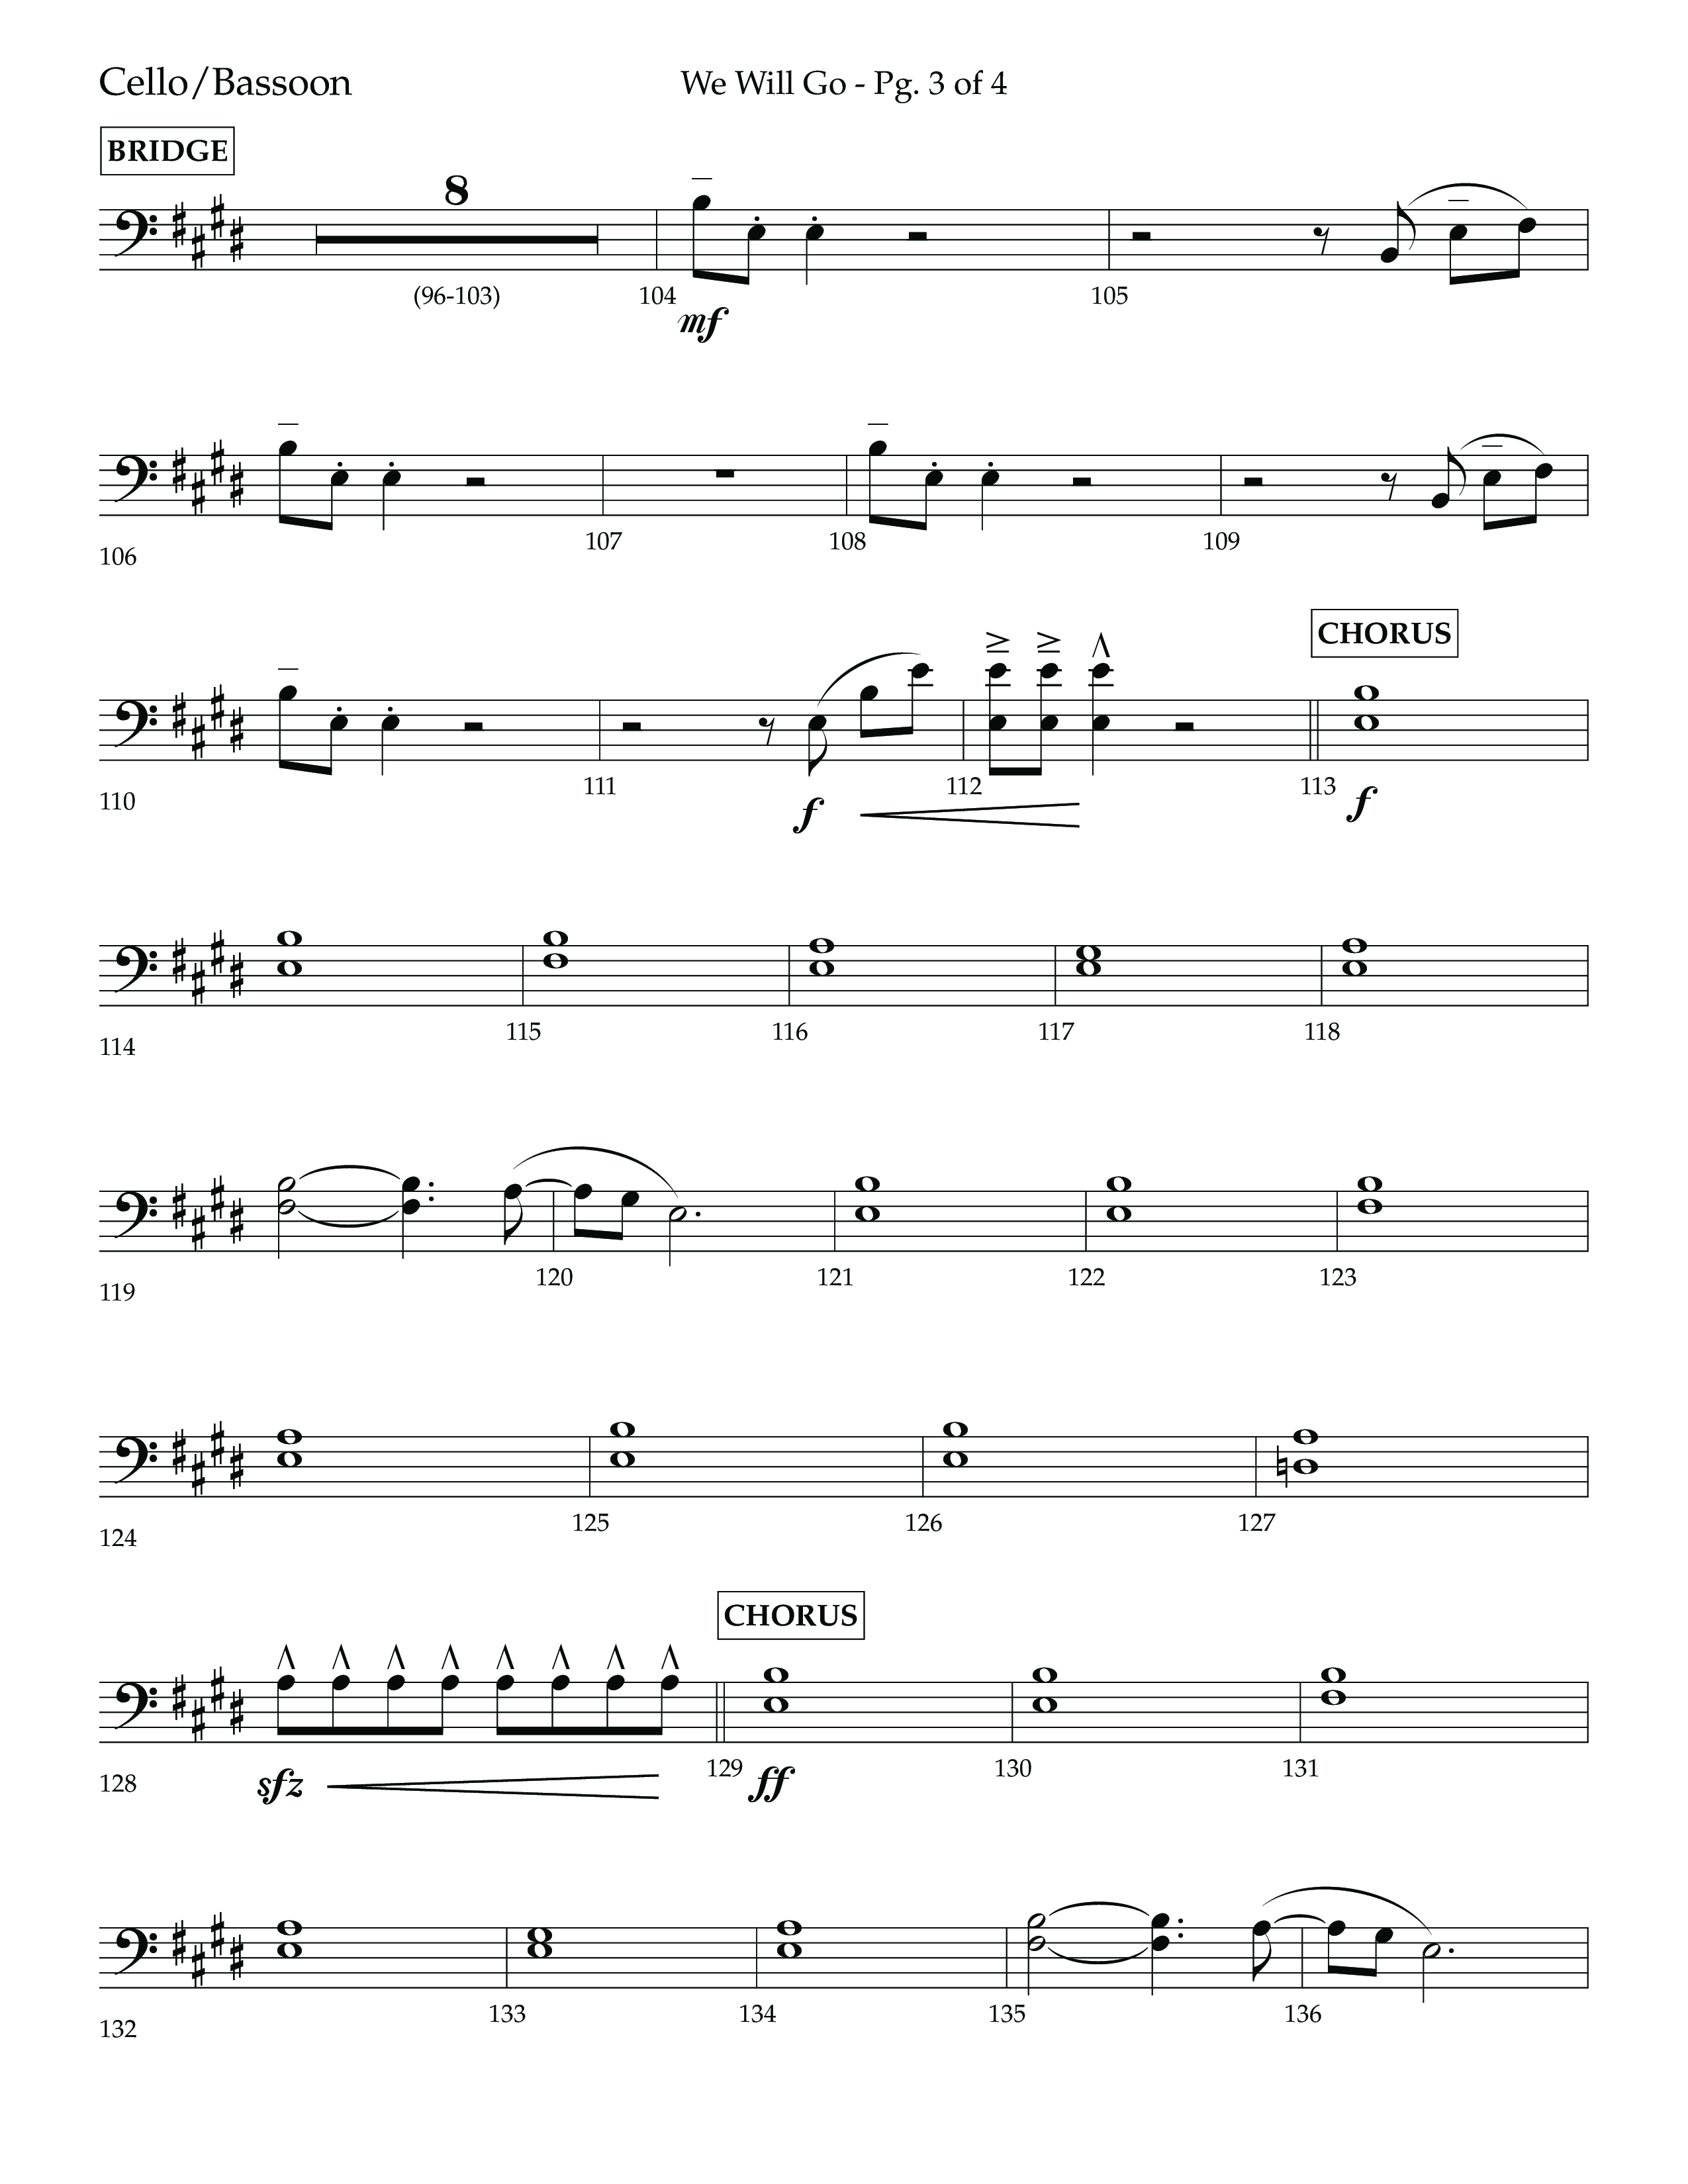 We Will Go (Choral Anthem SATB) Cello (Lifeway Choral / Arr. Cliff Duren)